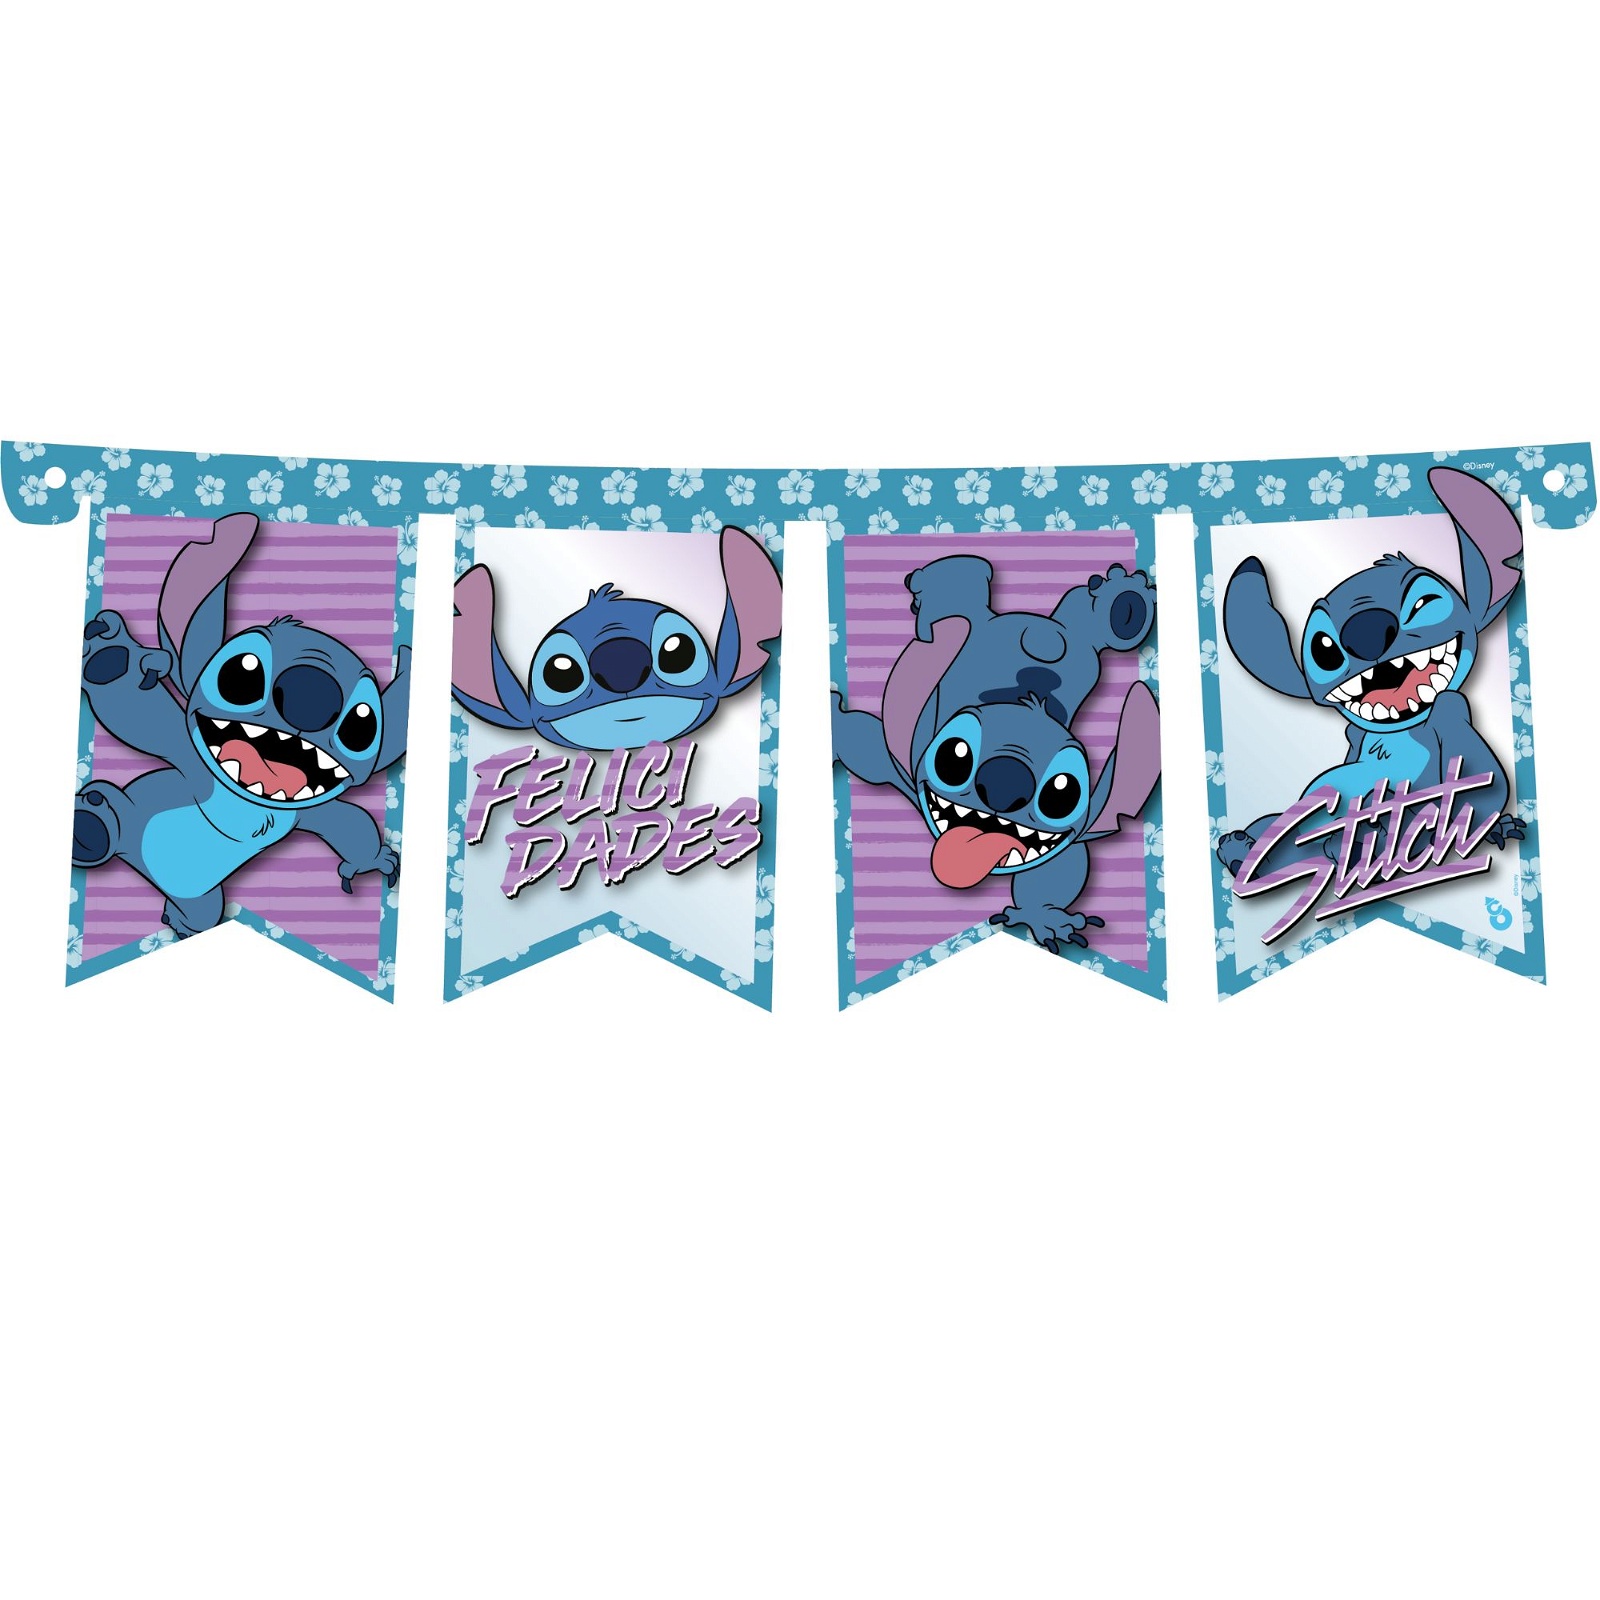 Stitch letras 3D / fiesta de cumpleaños de Stitch / decoración de